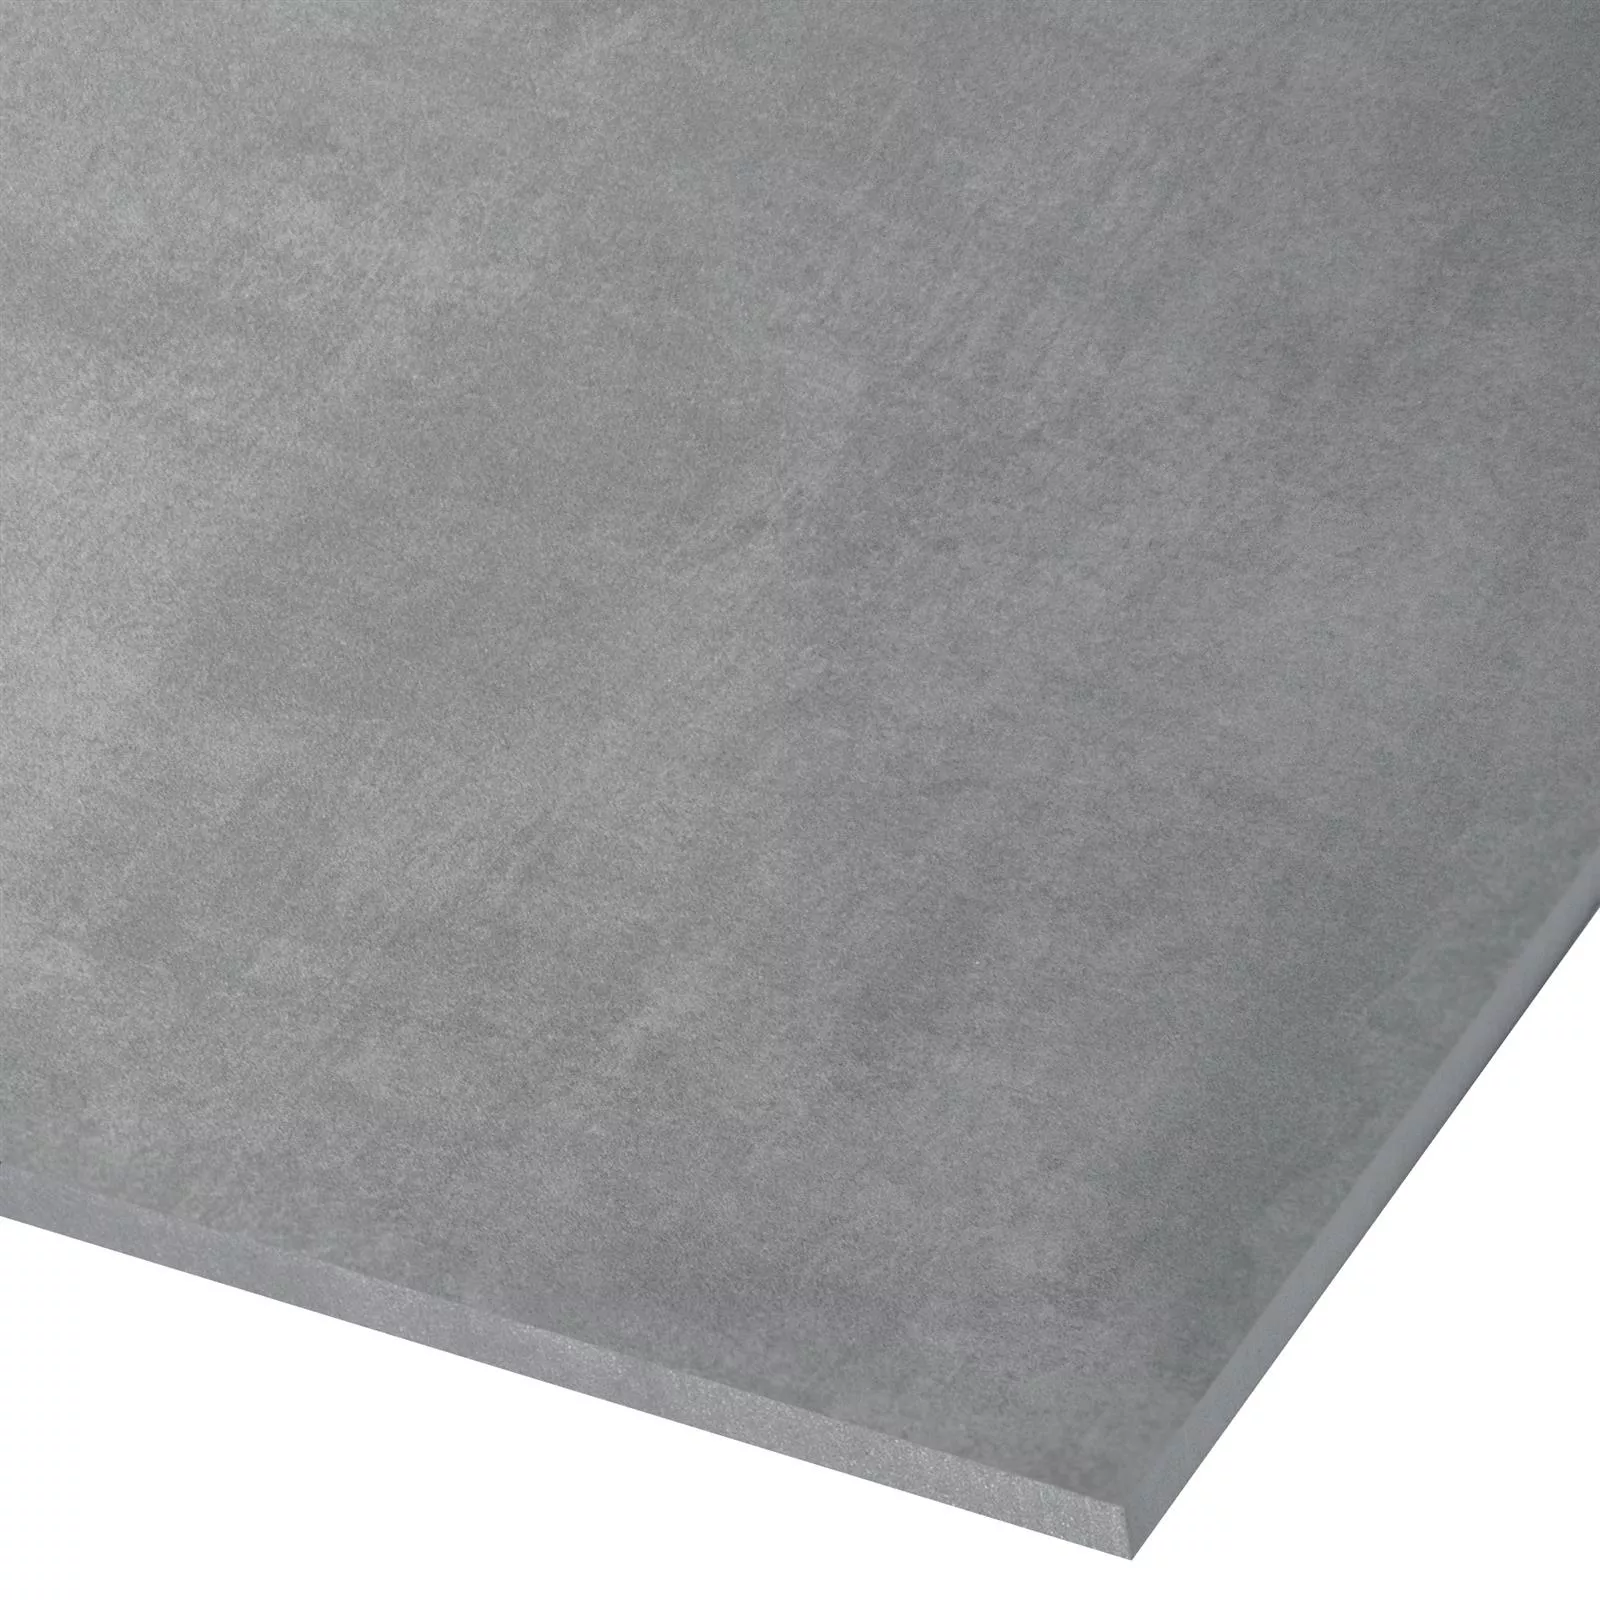 Sample Floor Tiles Beton Optic Noorvik Light Grey 30x60cm